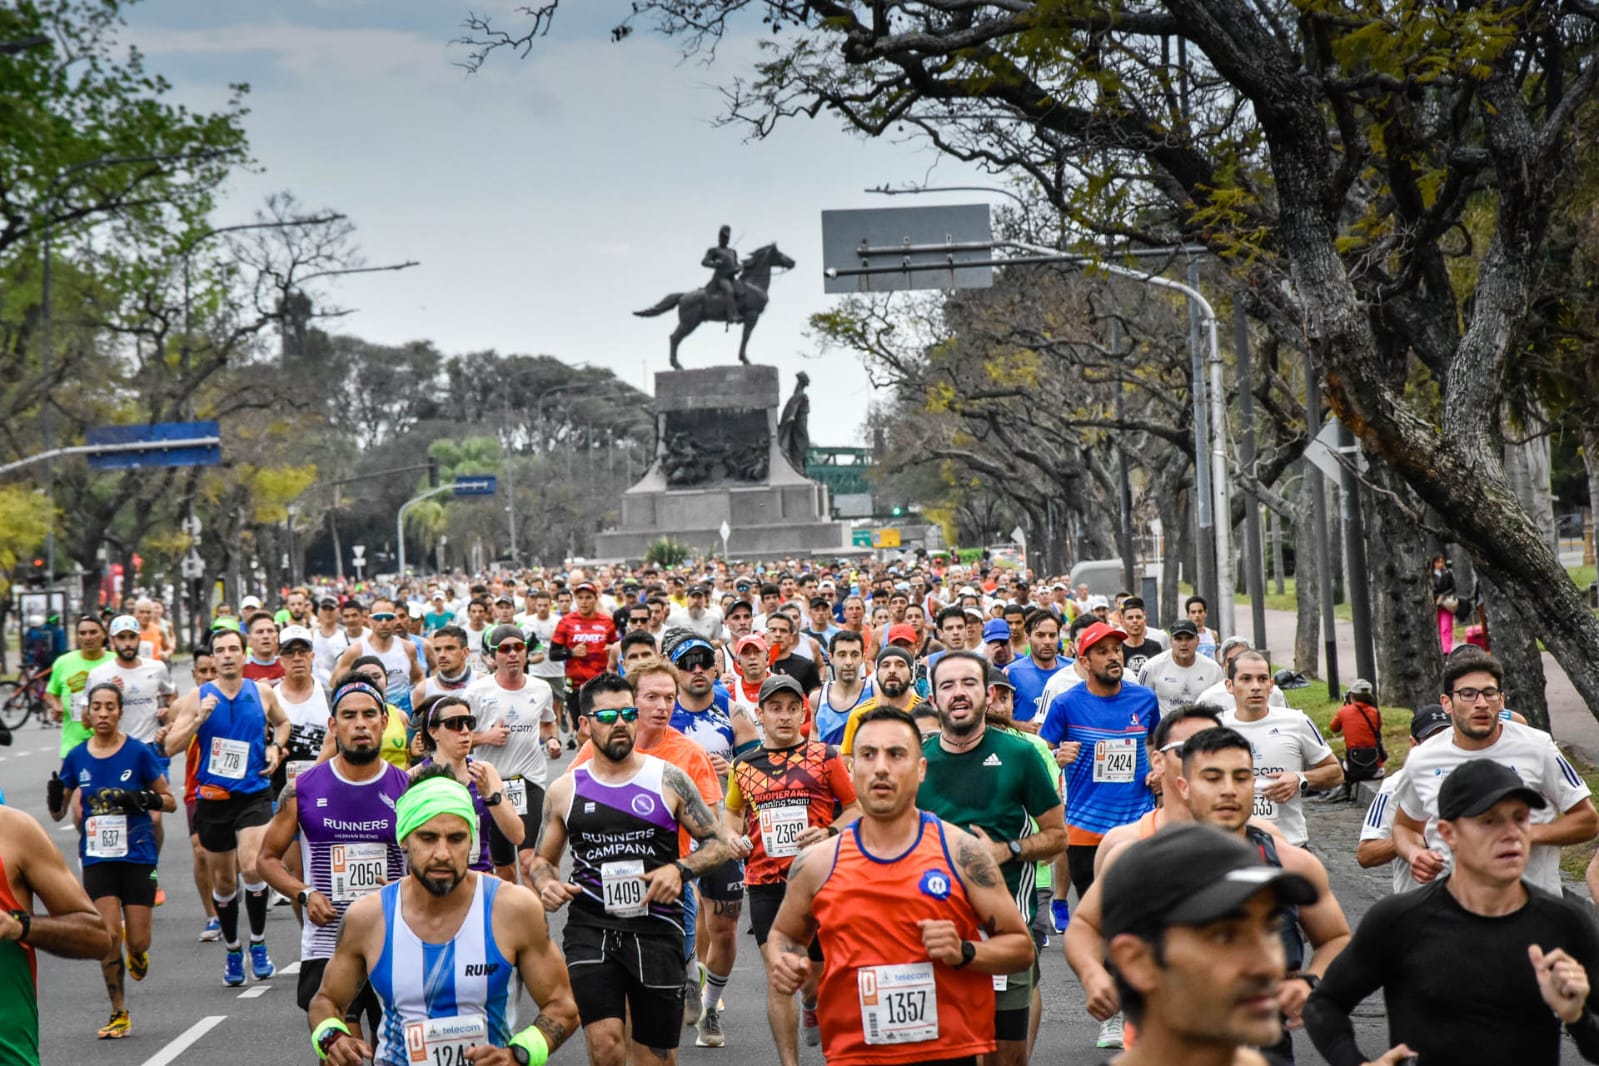 31 atletas de Misiones corrieron la Maratón de Buenos Aires